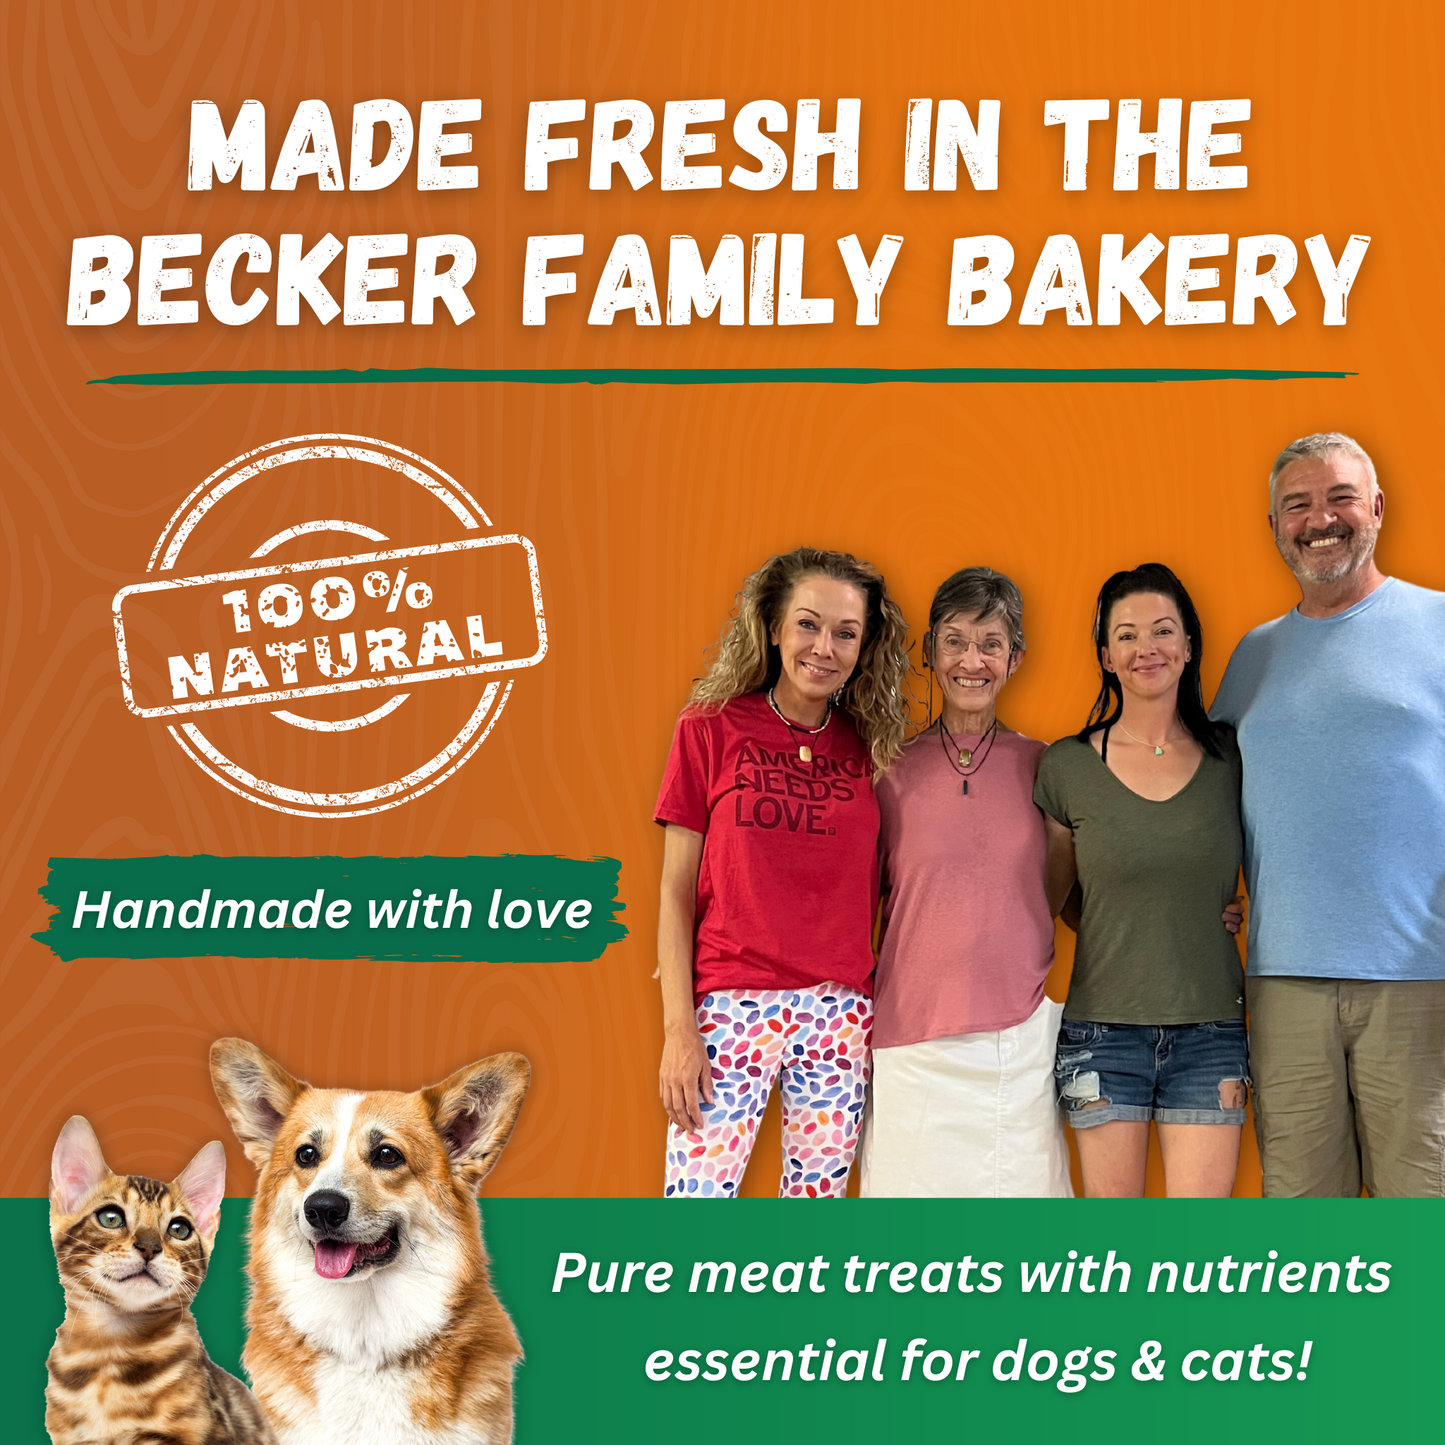 Dr. Becker's Veggie Bites- 3 Pack- Buy Bulk & Save